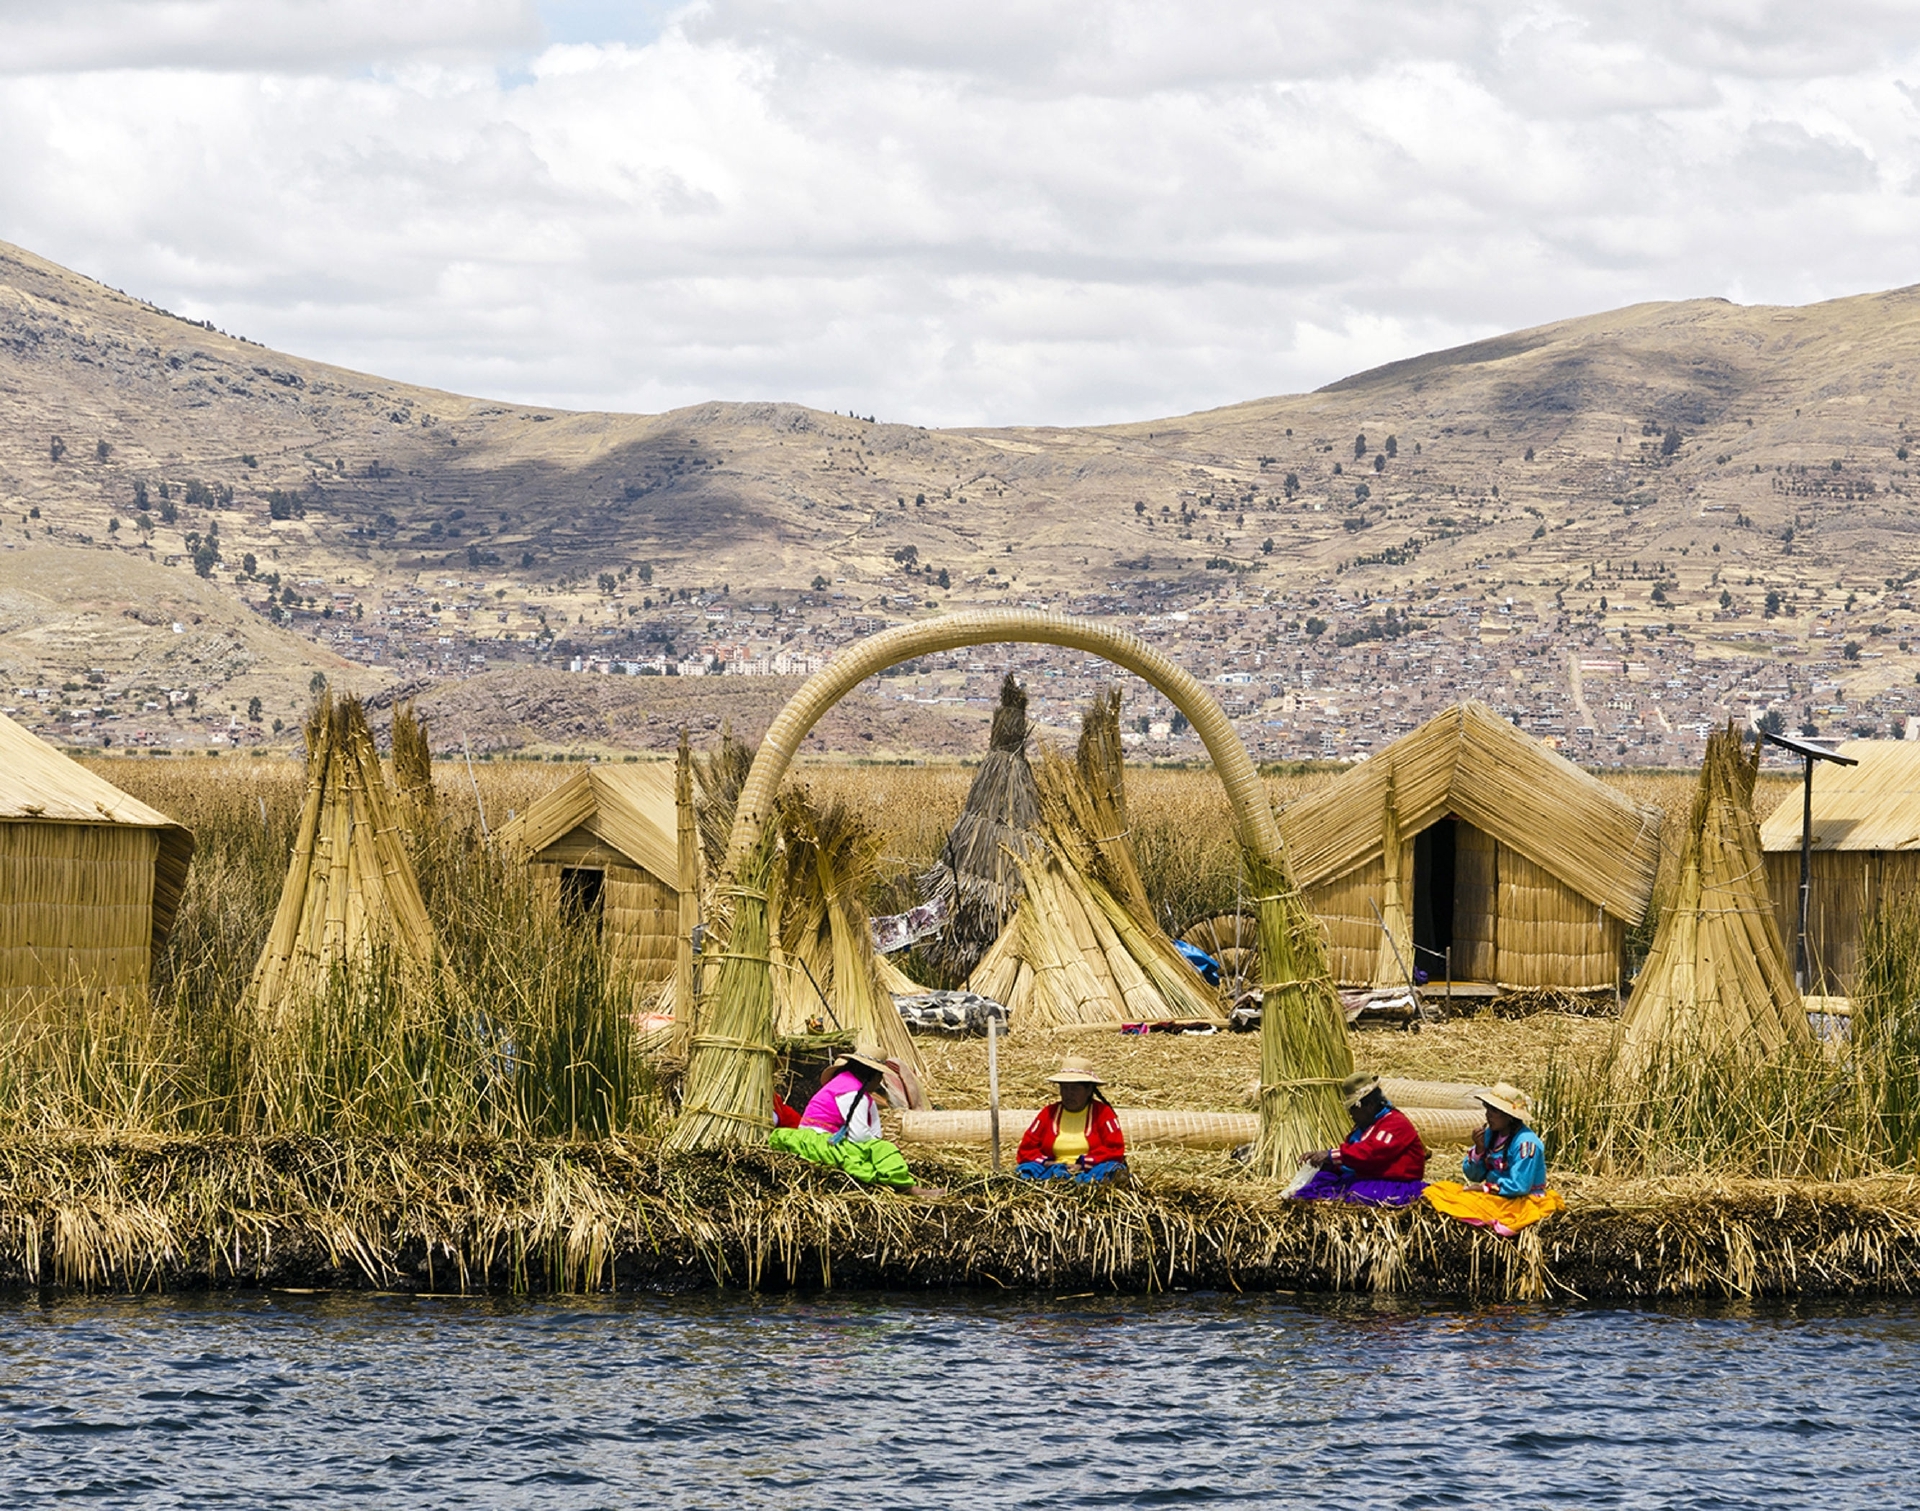 Uros islands of Lake Titicaca, Peru.